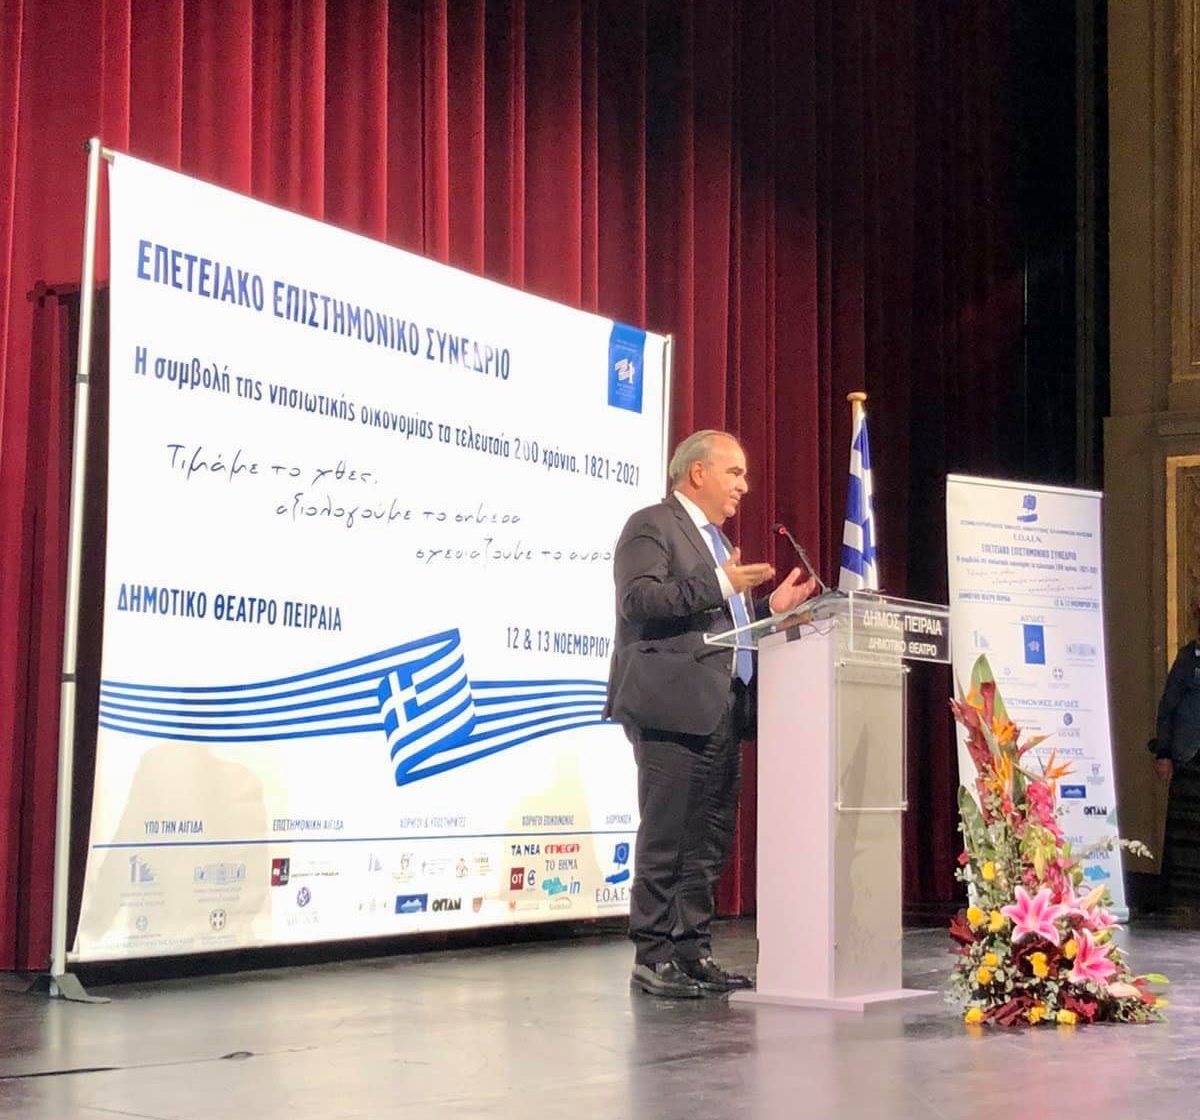 Ο Νίκος Παπαθανάσης, Αναπληρωτής Υπουργός Ανάπτυξης και Επενδύσεων, στο Επιστημονικό Συνέδριο του Επιμελητηριακού Ομίλου Ανάπτυξης Ελληνικών Νησιών